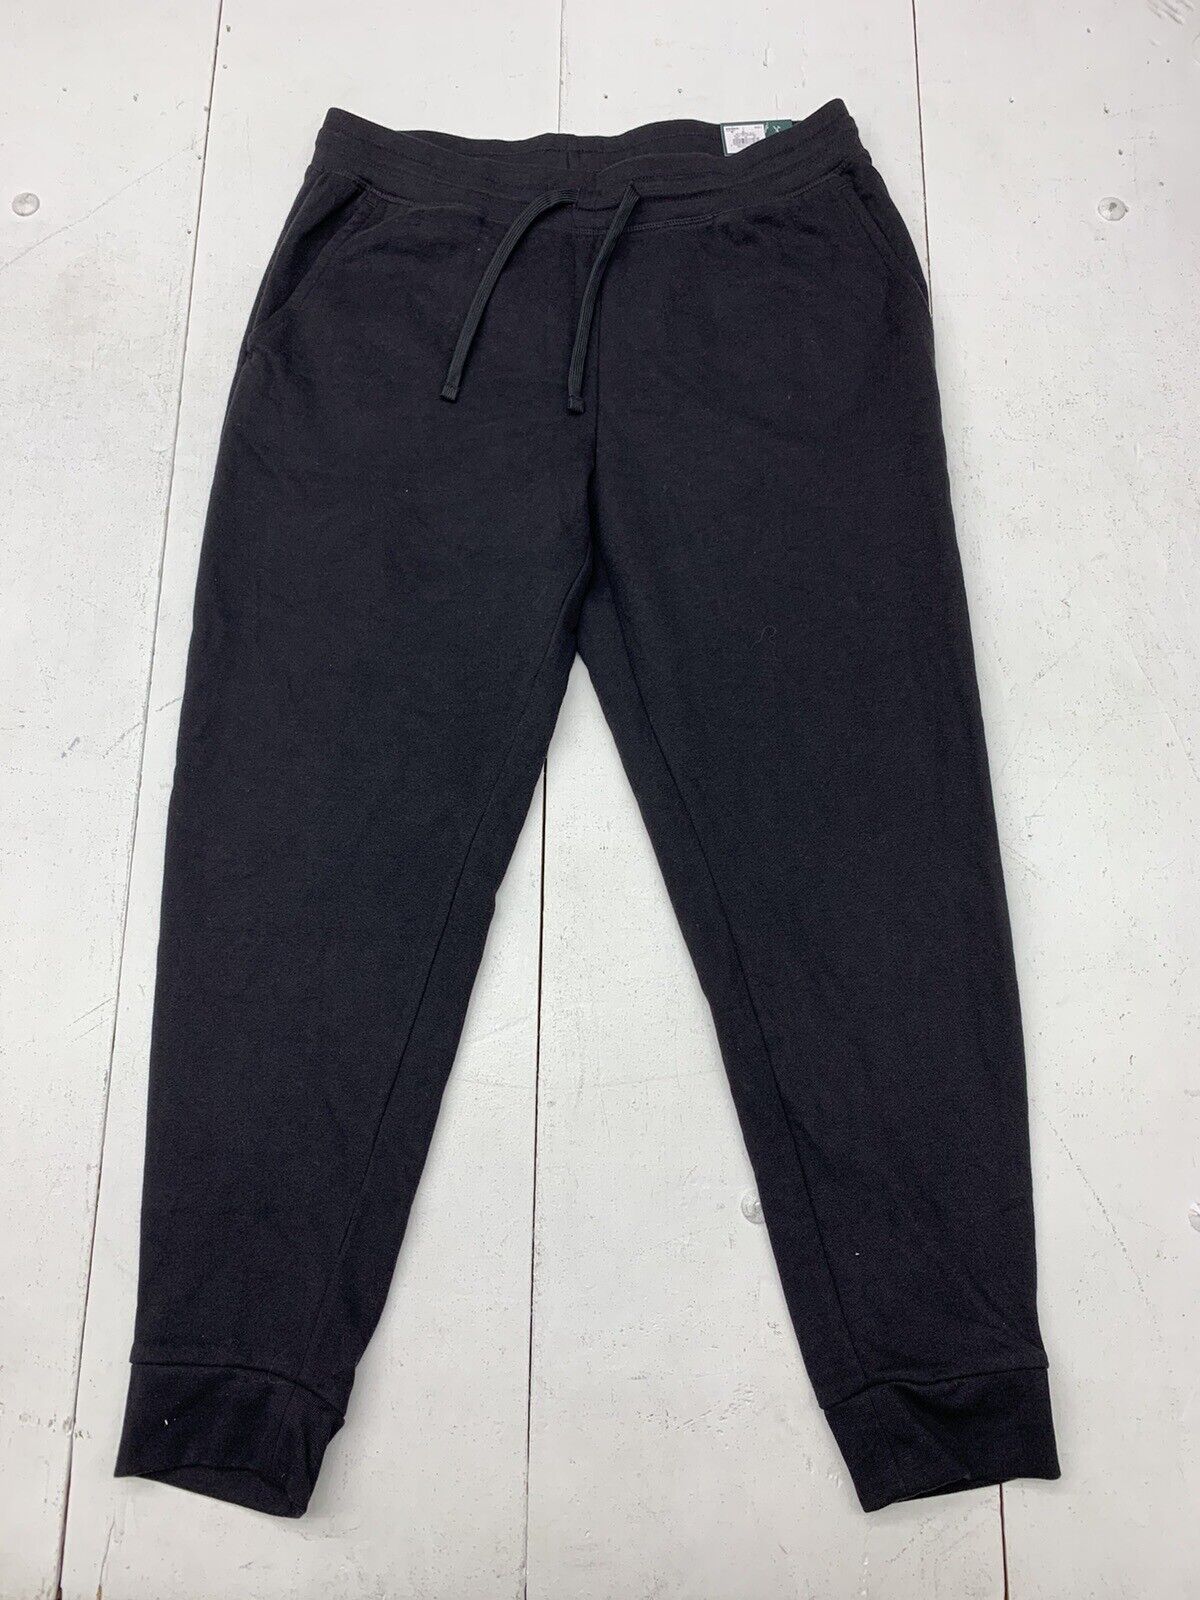 Women's TEK GEAR Ultrasoft Fleece Pants Relaxed Fit Size Medium